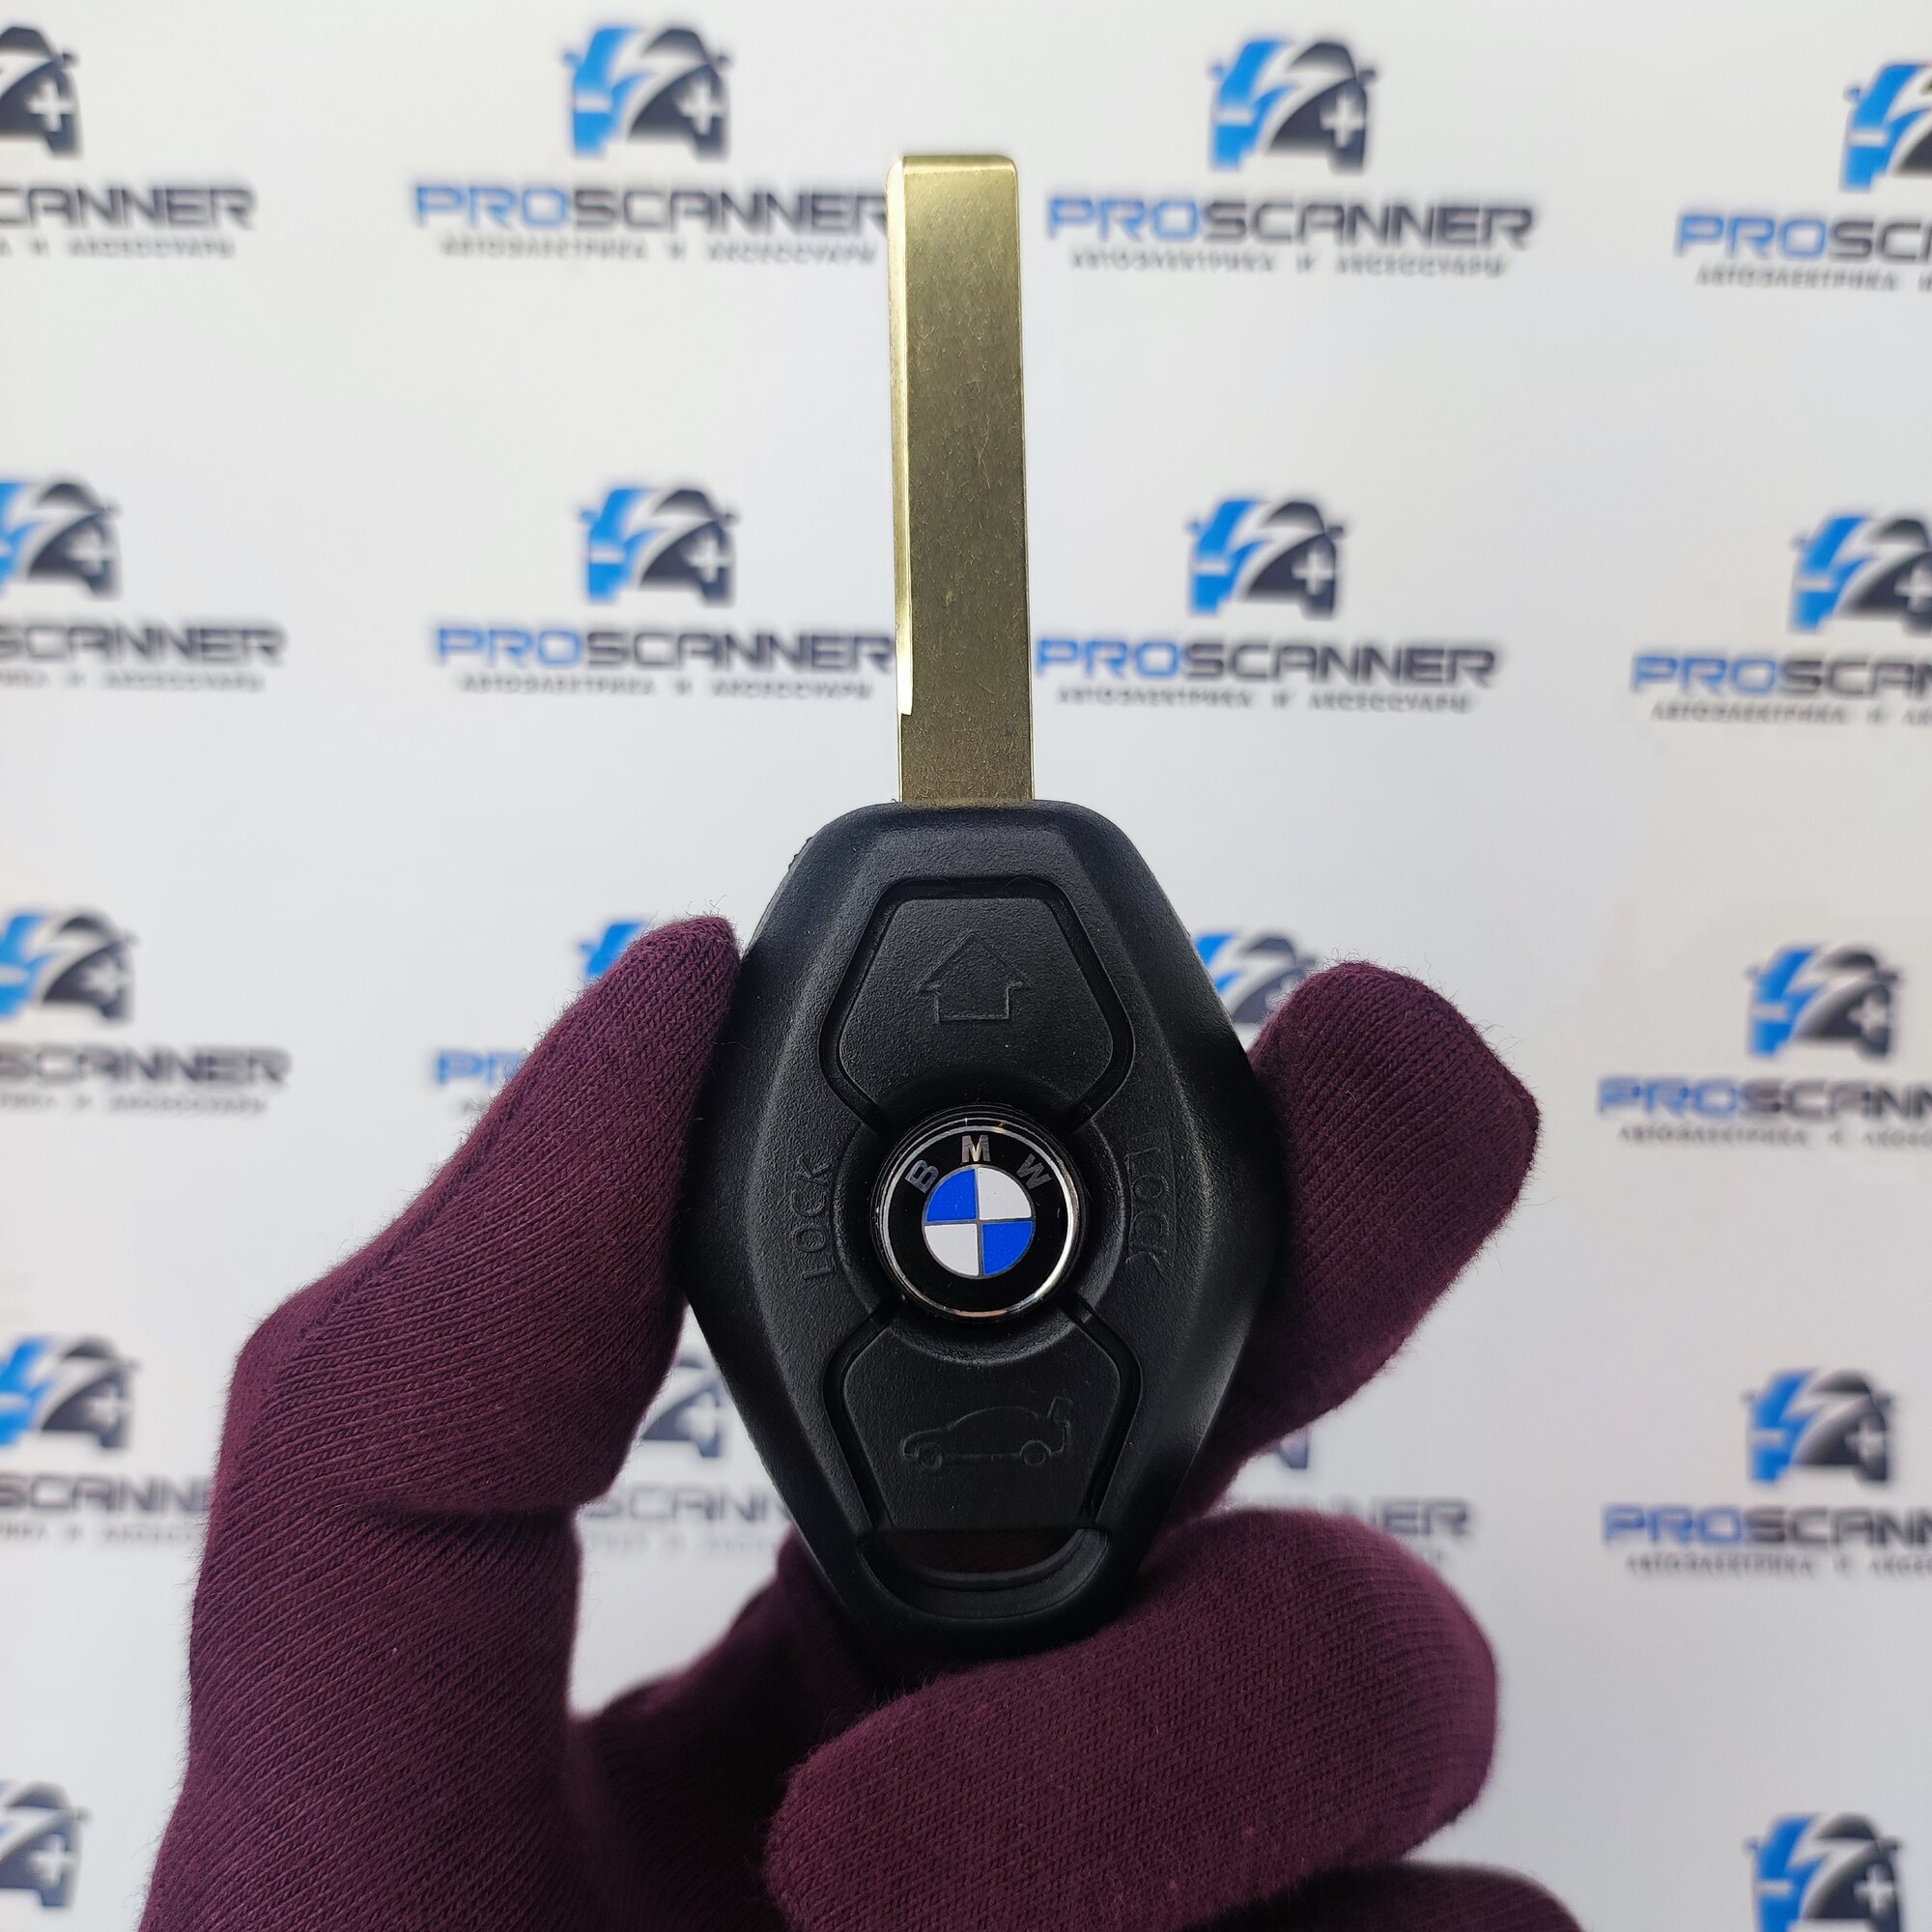 Корпус ключа зажигания для БМВ BMW E46 E39 E38 X3 e83 X5 e53 - 1 штука (3х кнопочный ключ лезвие HU92)